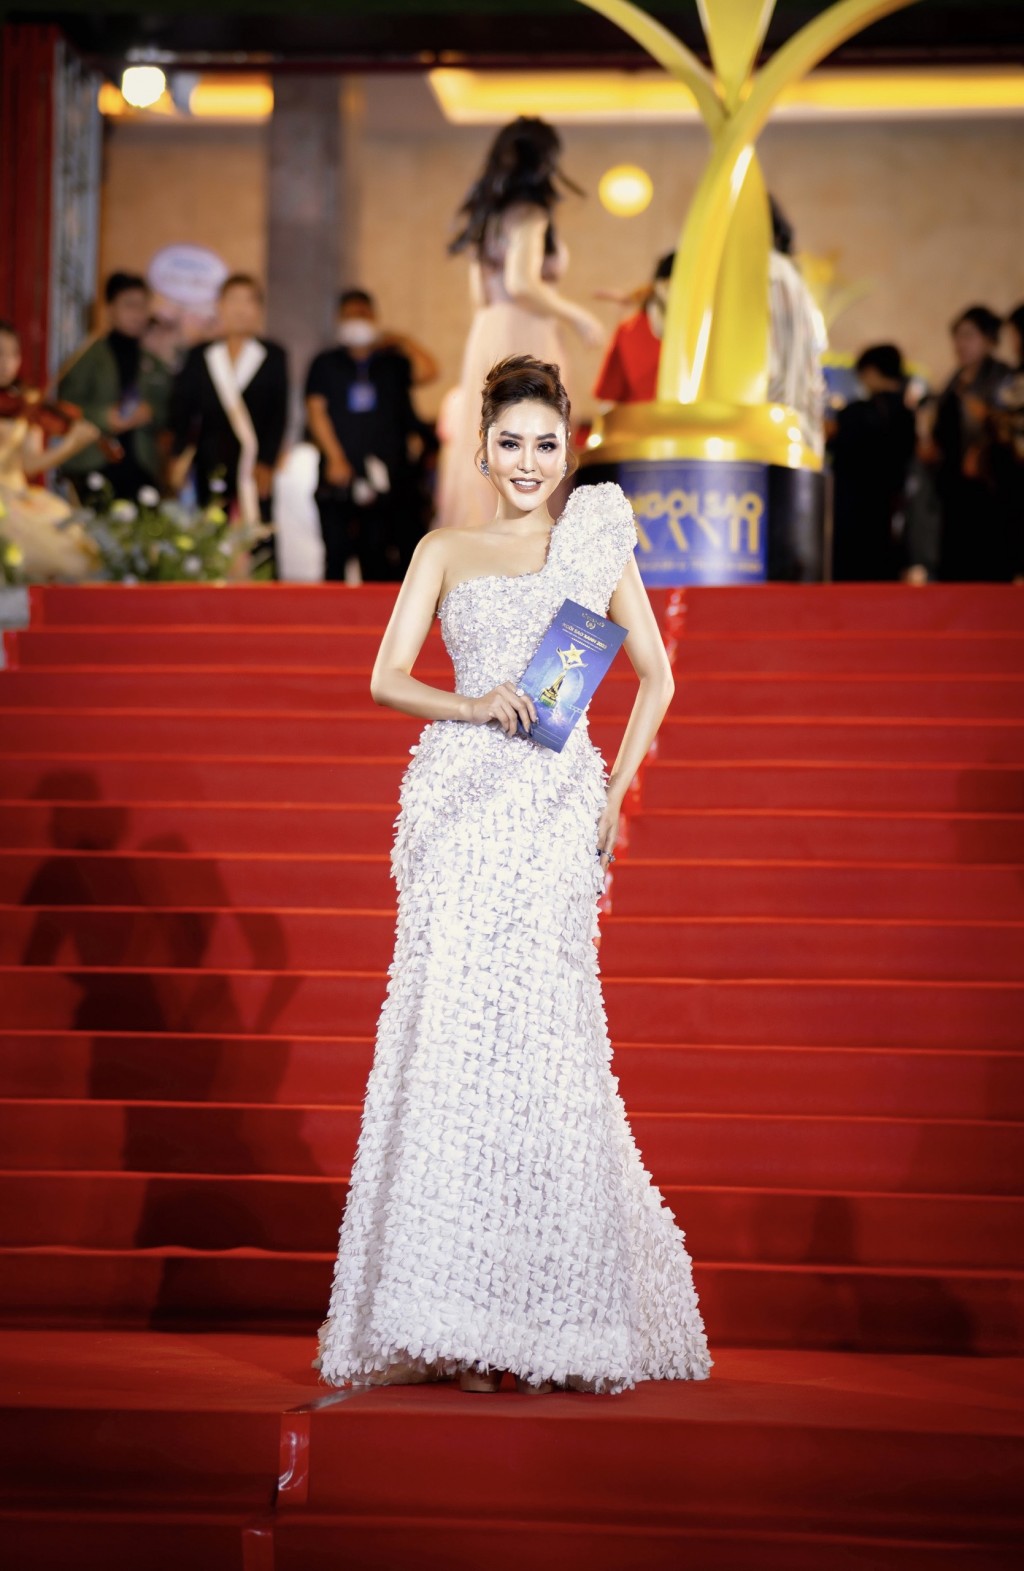 Hoa hậu Di Khả Hân không ngại học hỏi ở lĩnh vực phim ảnh